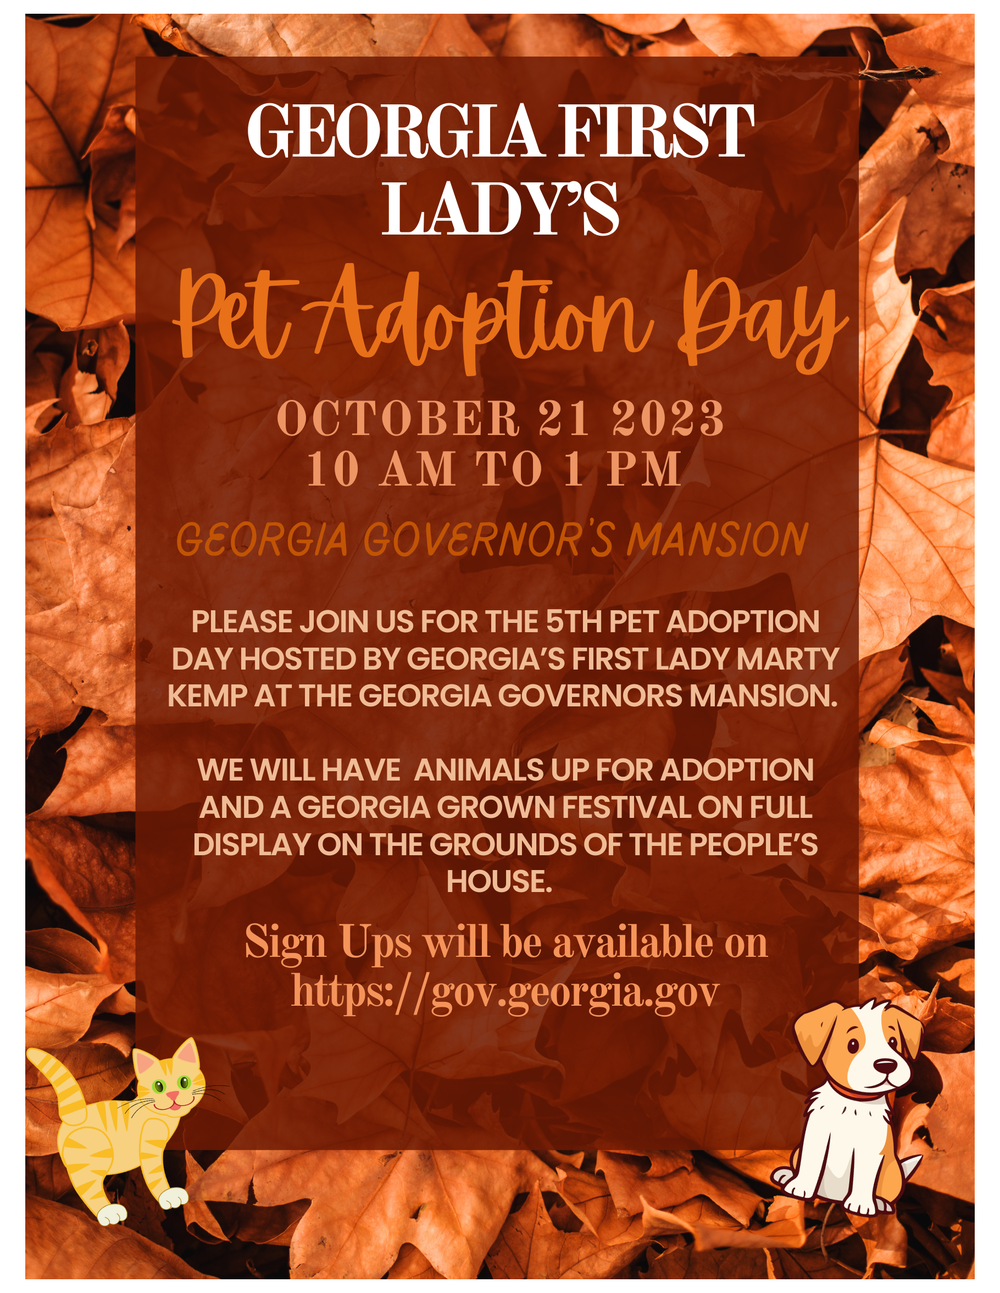 Pet Adoption Day